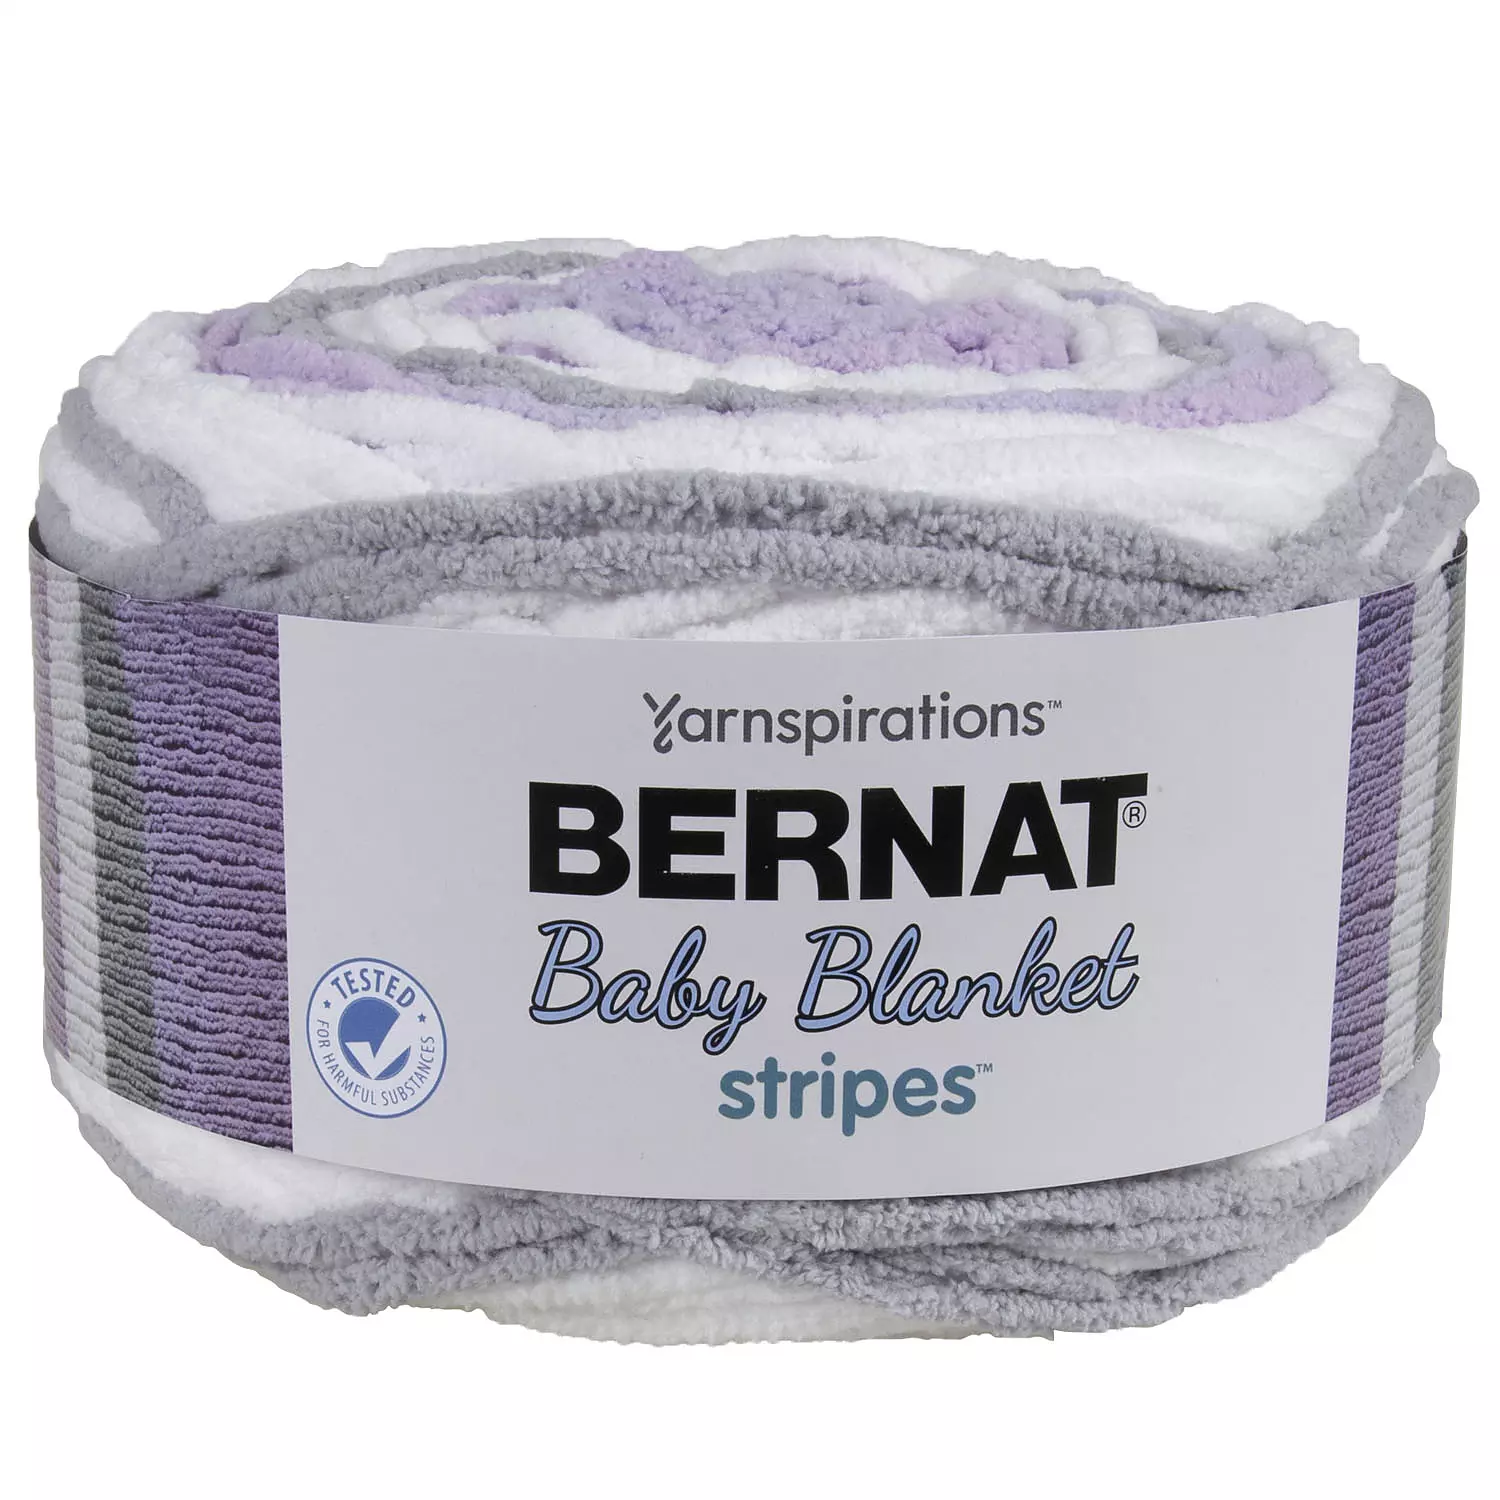 Bernat Baby Blanket Stripes - Yarn, Violets